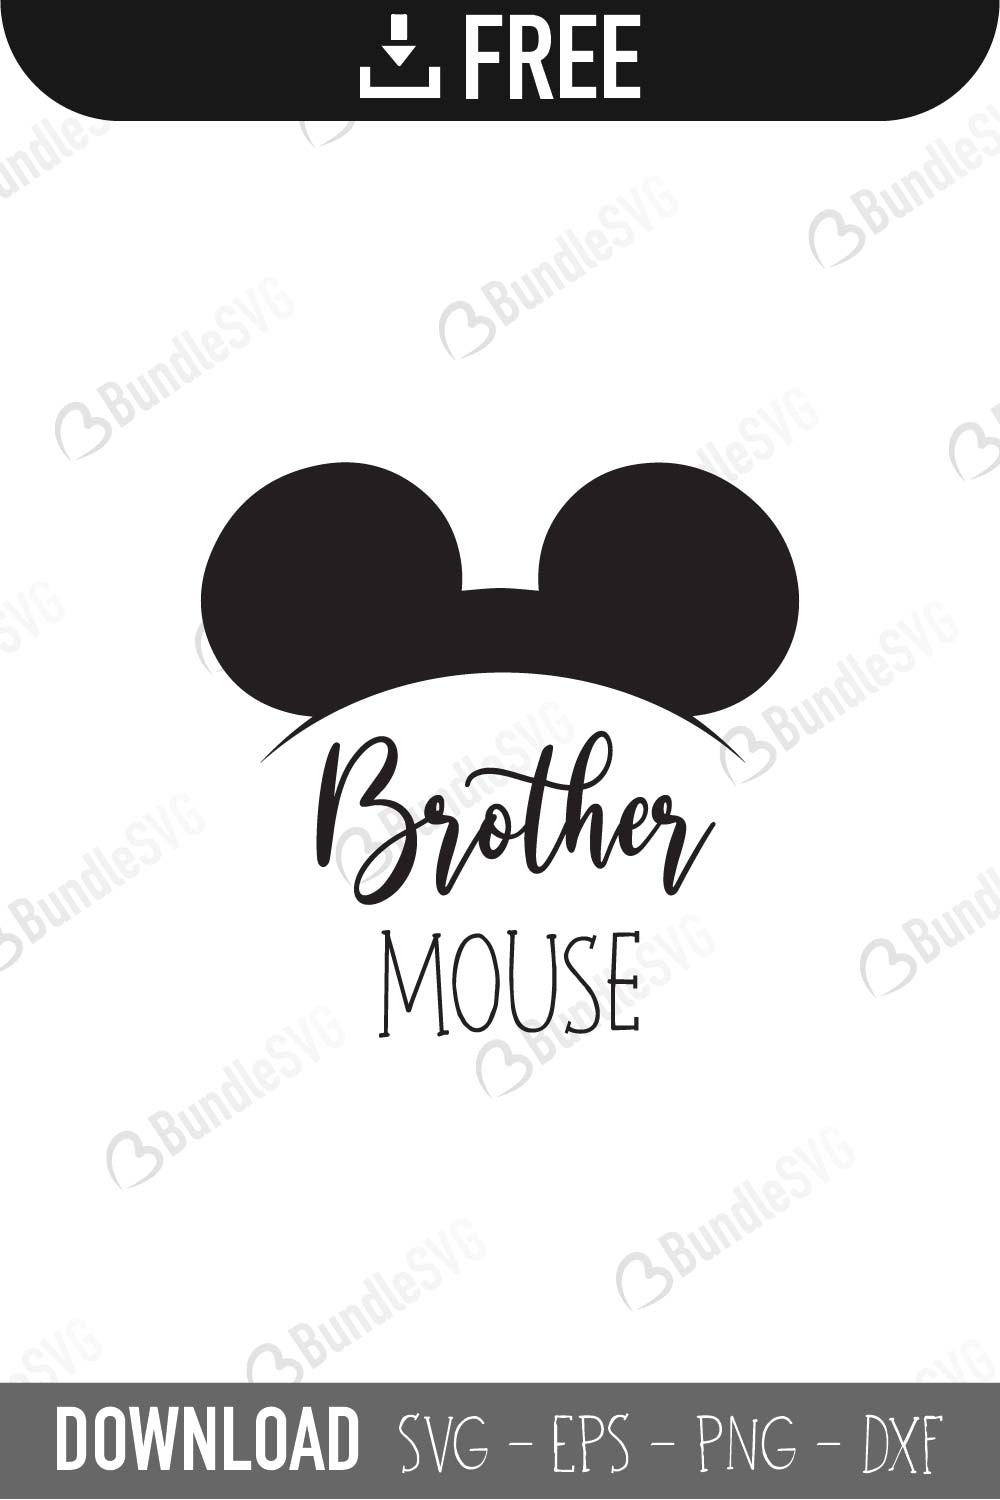 brother mouse, brother mouse cricut, brother mouse design, brother mouse download, brother mouse free, brother mouse free svg, brother mouse silhouette, brother mouse svg, brother mouse svg cut files free, cut files, dxf, silhouette, svg, vector